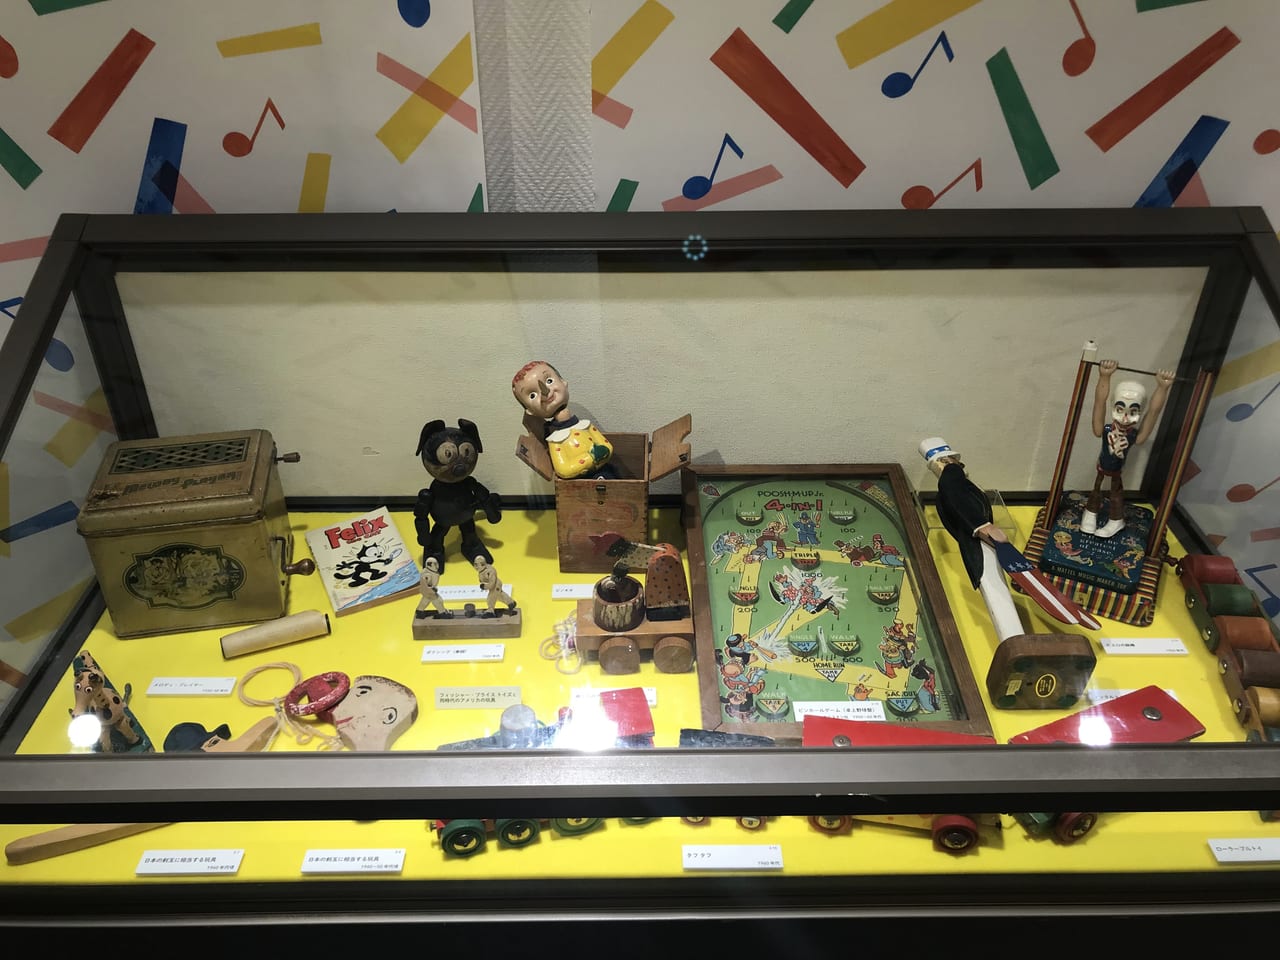 世田谷区三軒茶屋生活工房でアメリカン・トイズ since 1920s 暮らしと時代を映す玩具展が2021年9月7日〜12月19日まで開催しています。